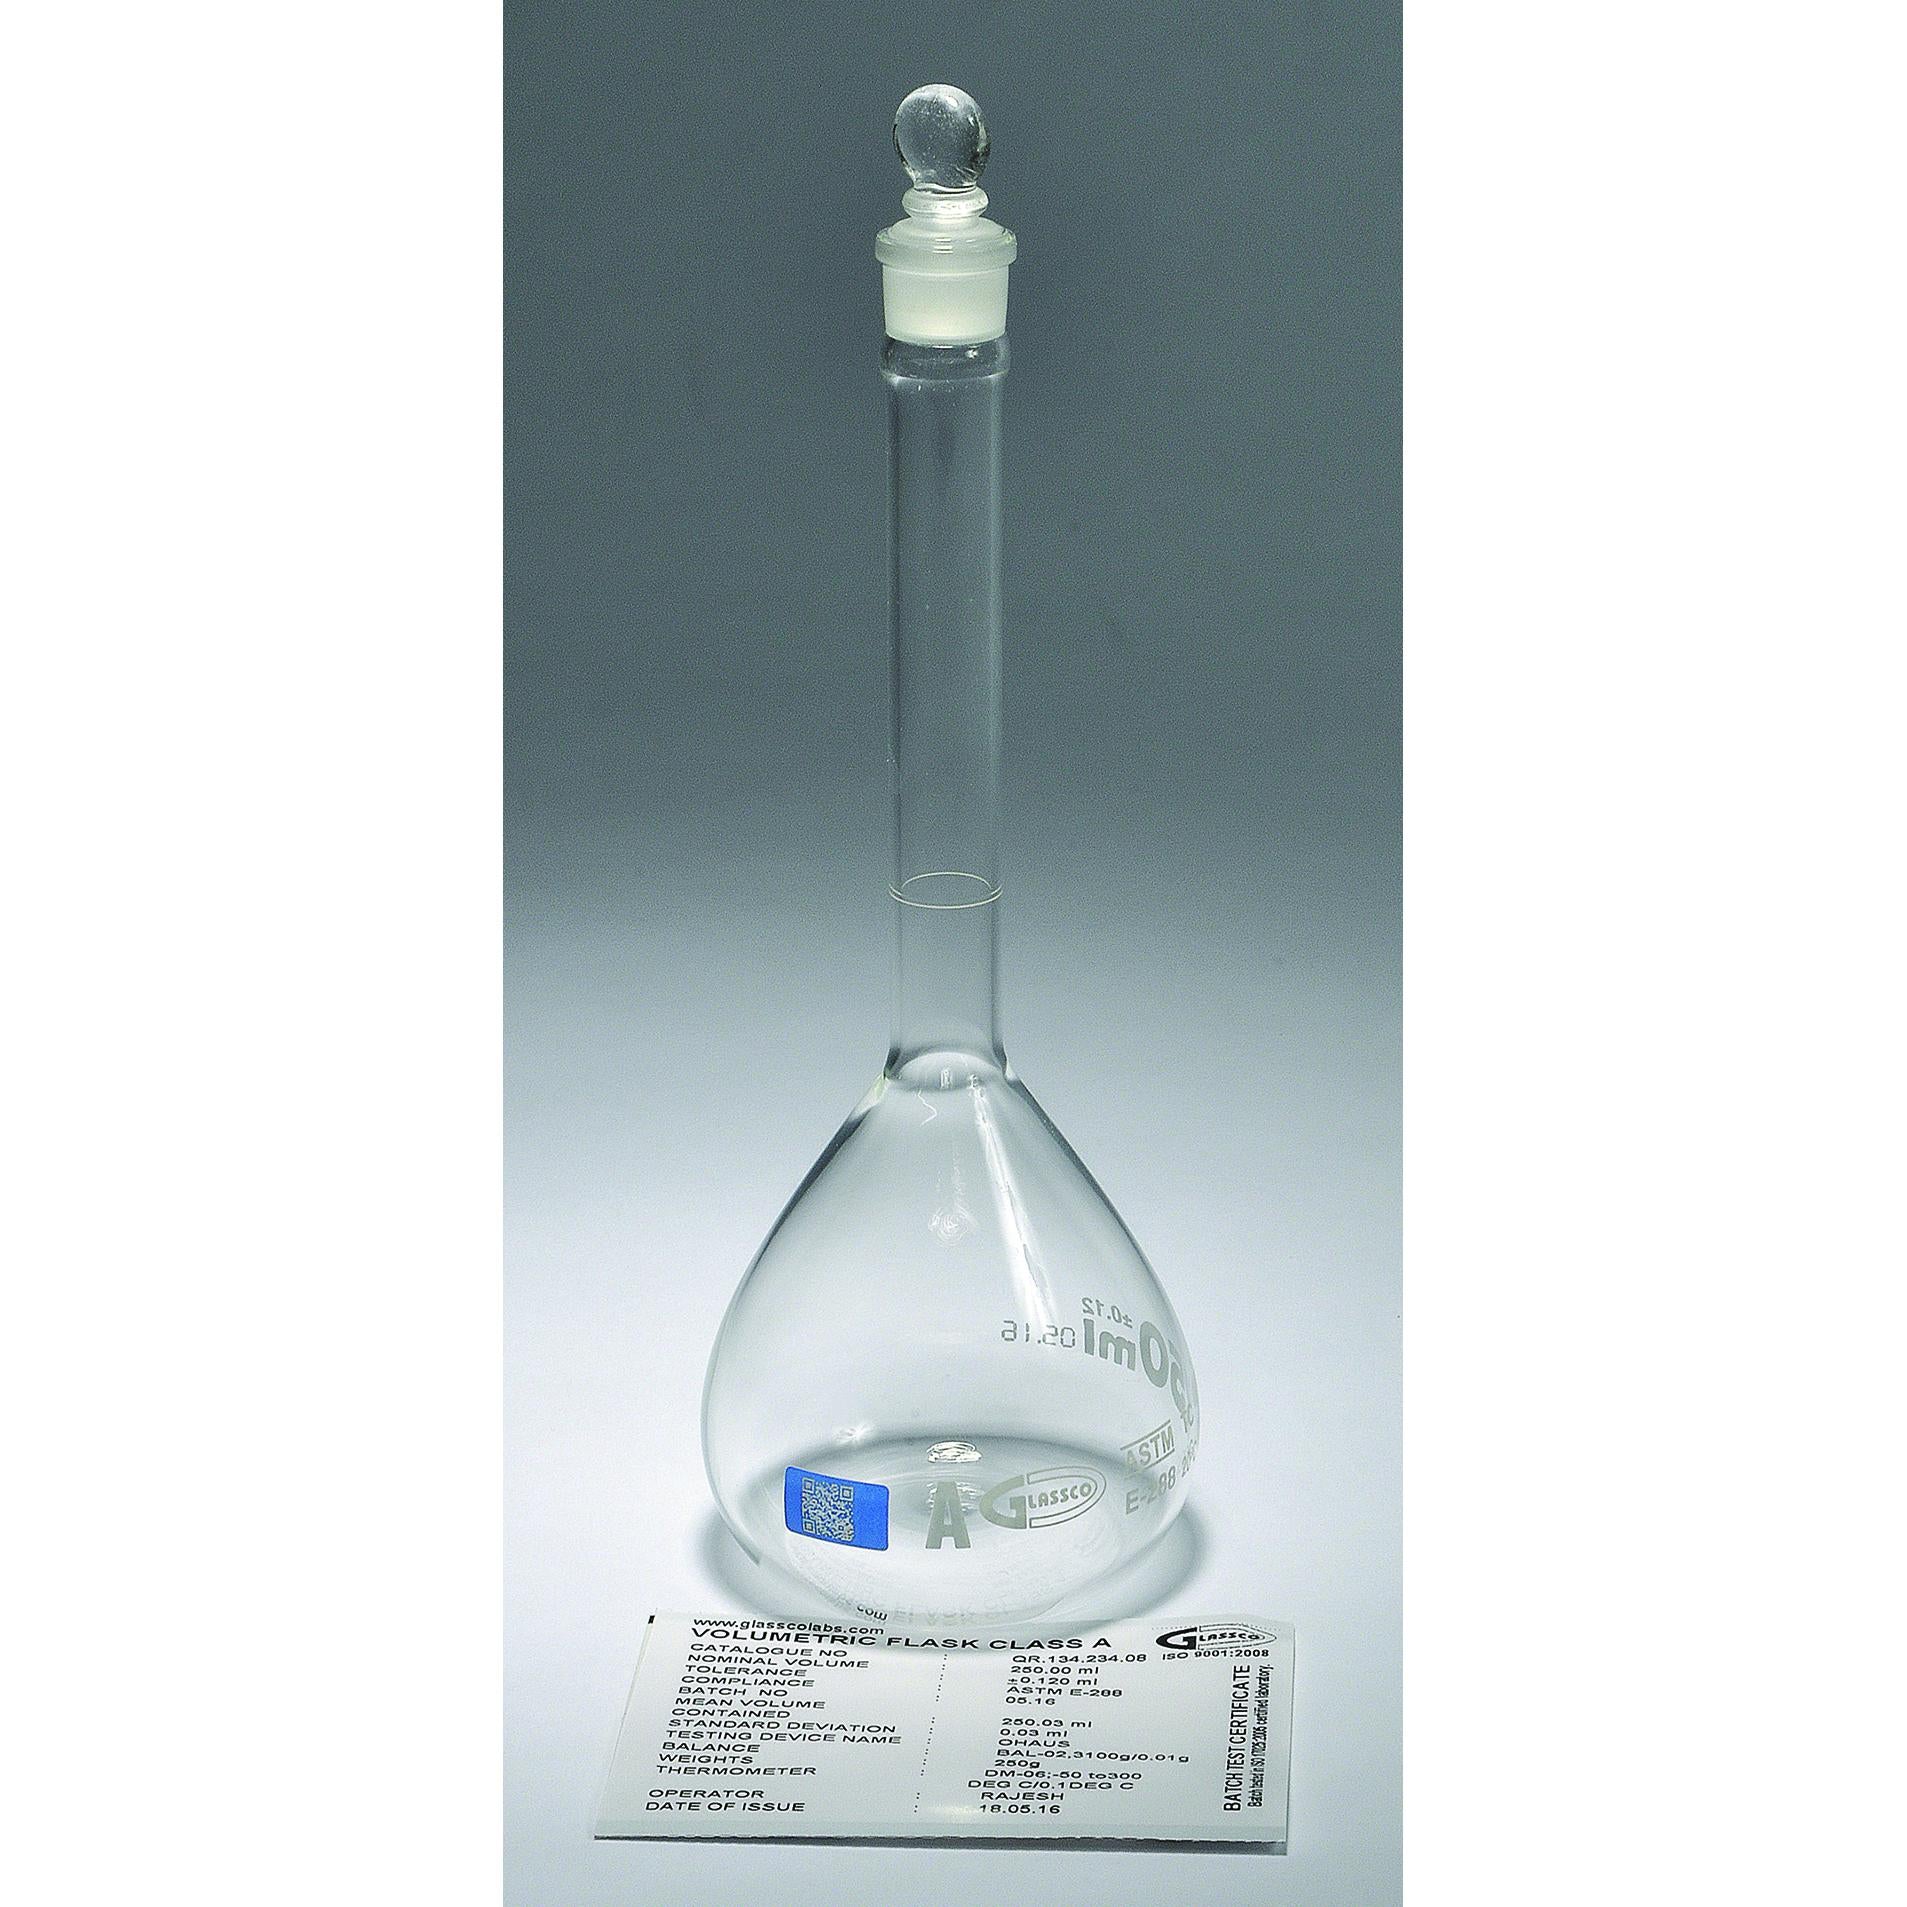 Volumetric Flasks, Class A, with Glass Stopper, Batch Certified, QR